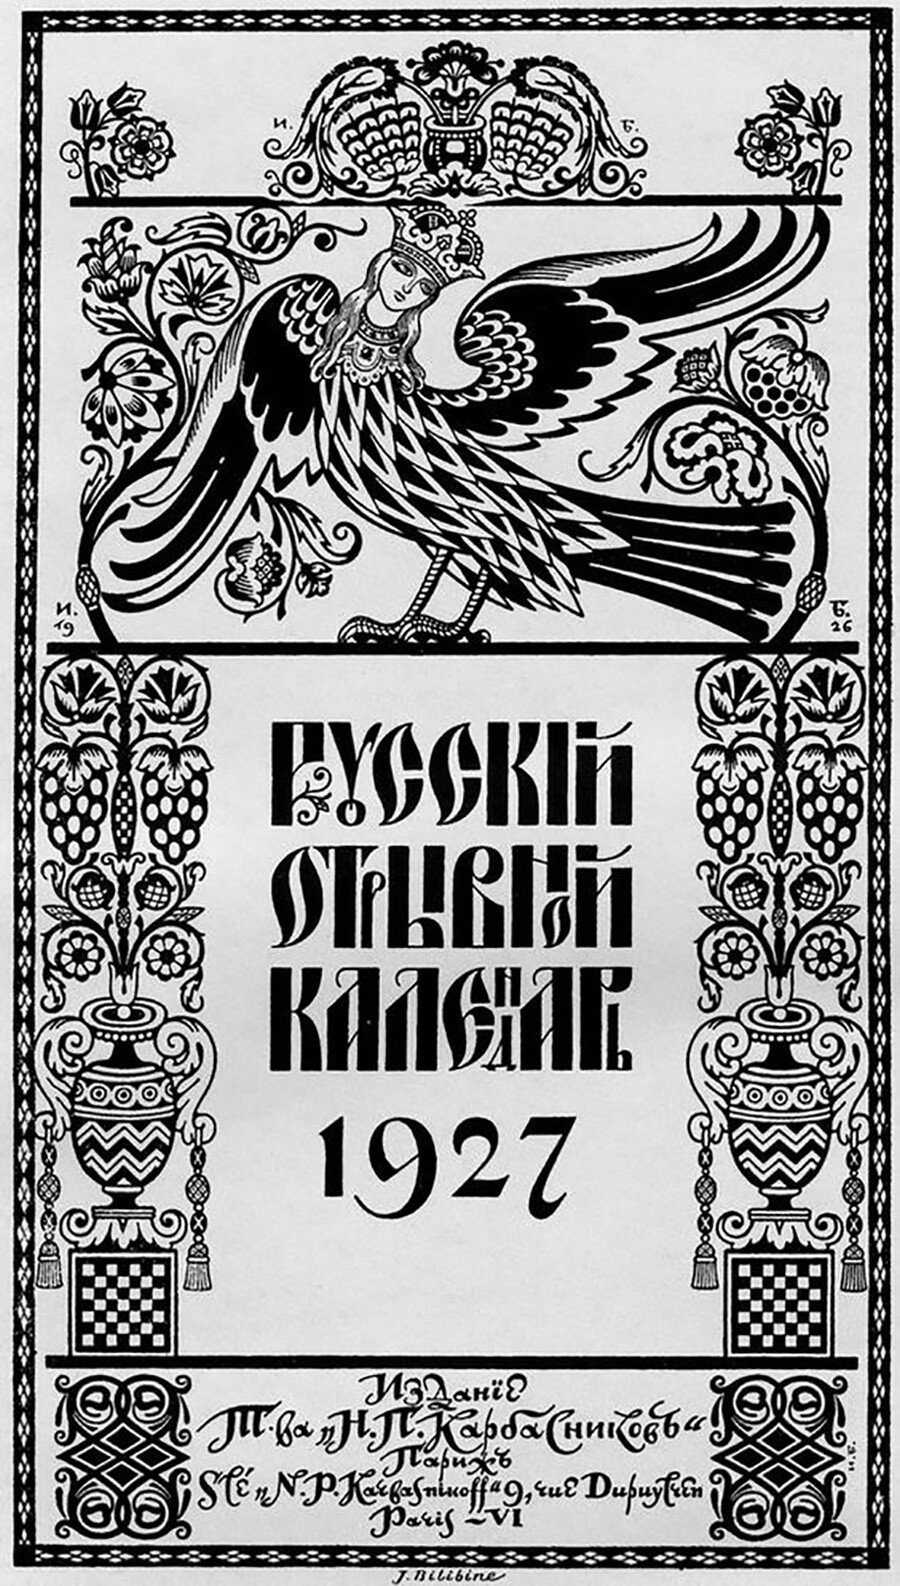 Calendario ruso desprendible para 1927, 1926. I. Bilibin